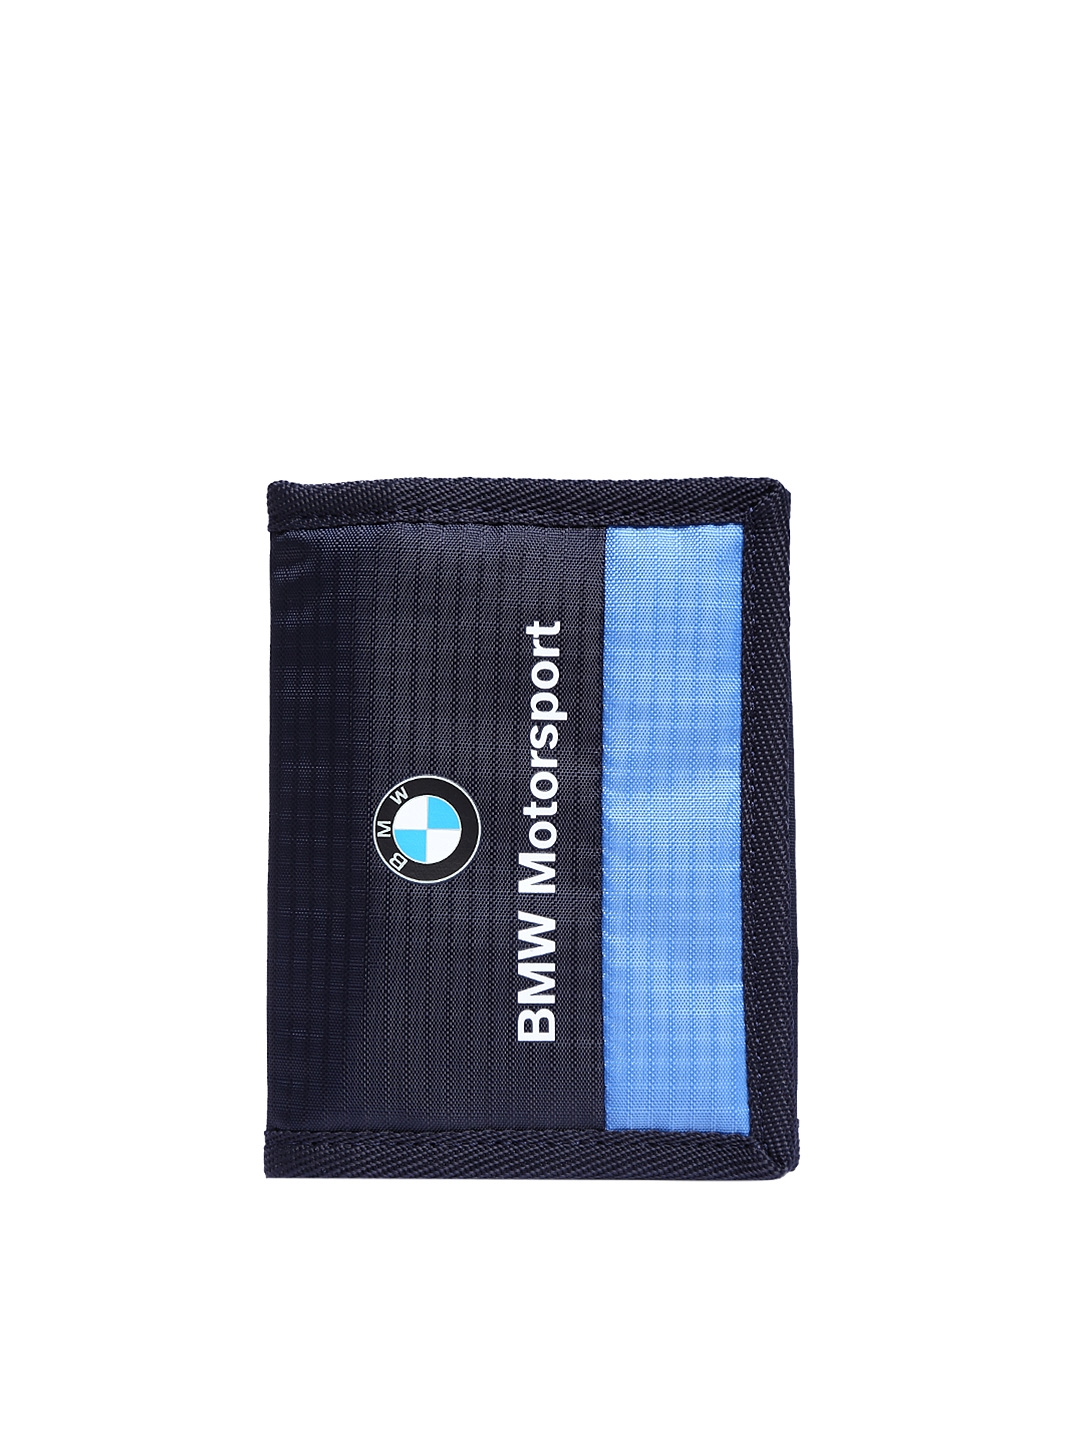 puma bmw motorsport unisex wallet